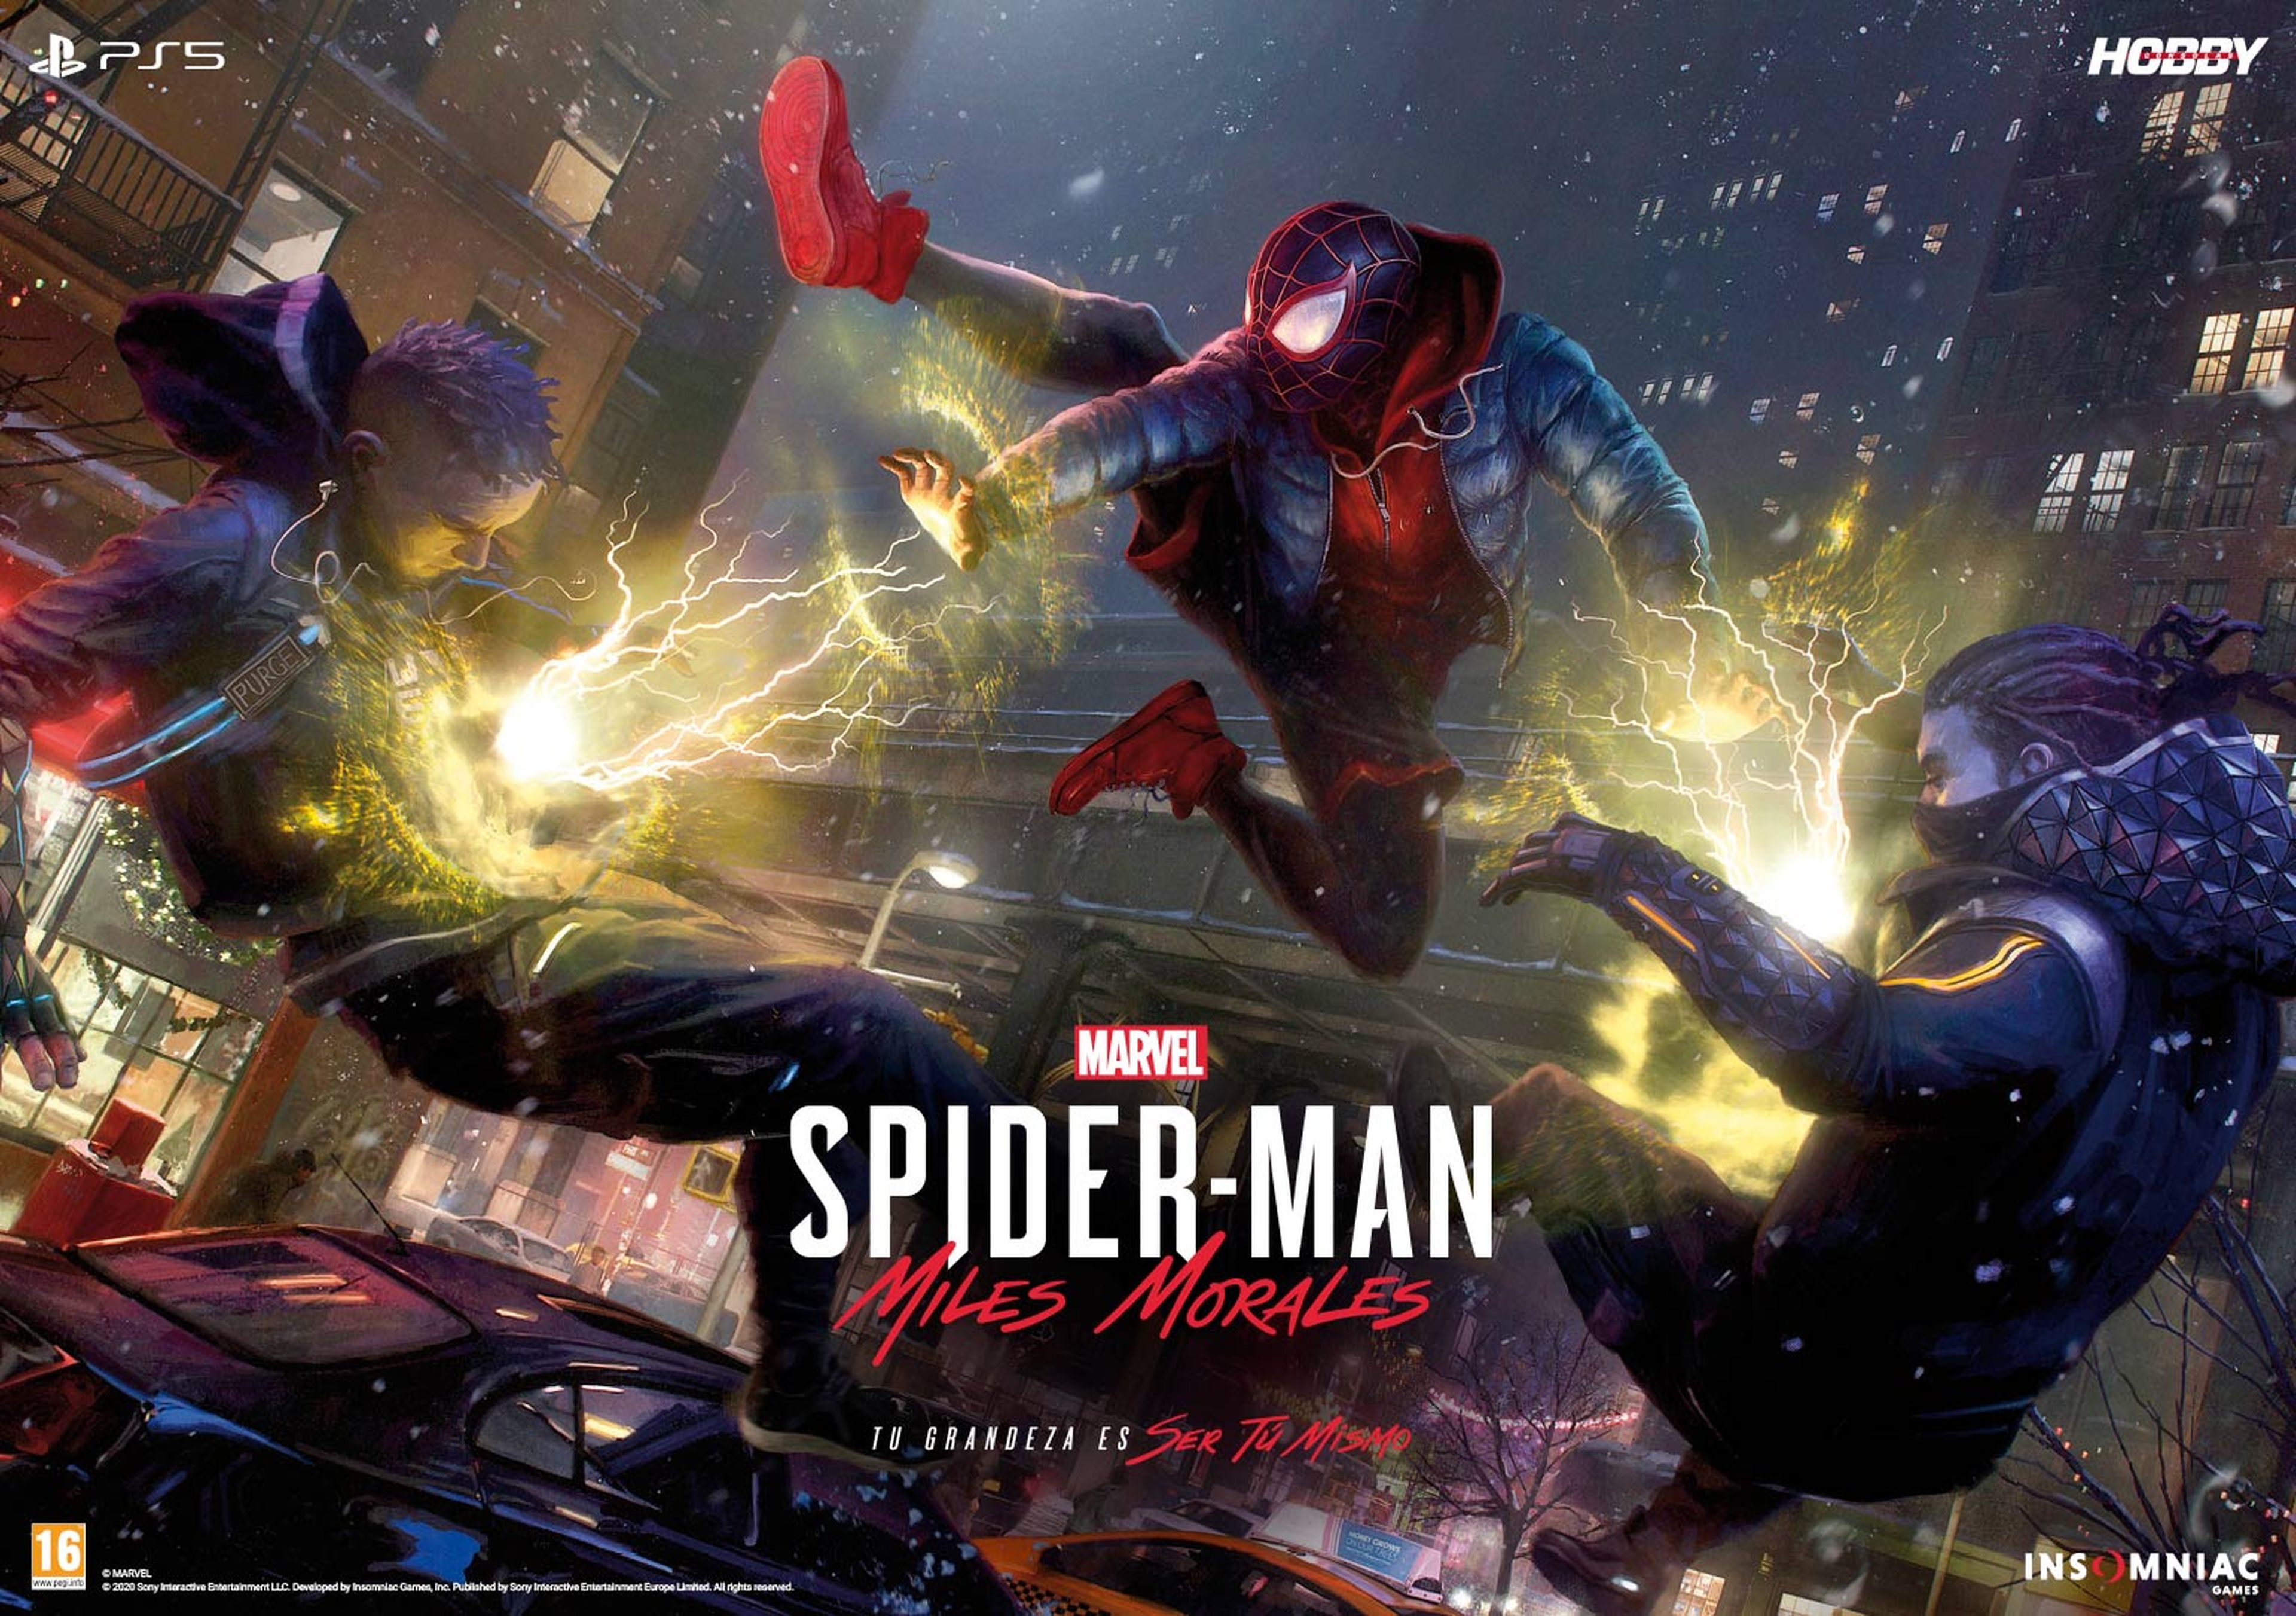 Hobby Consolas 352, a la venta con reportajes de PS5, Xbox Series X-S y Marvel's Spider-Man: Miles Morales